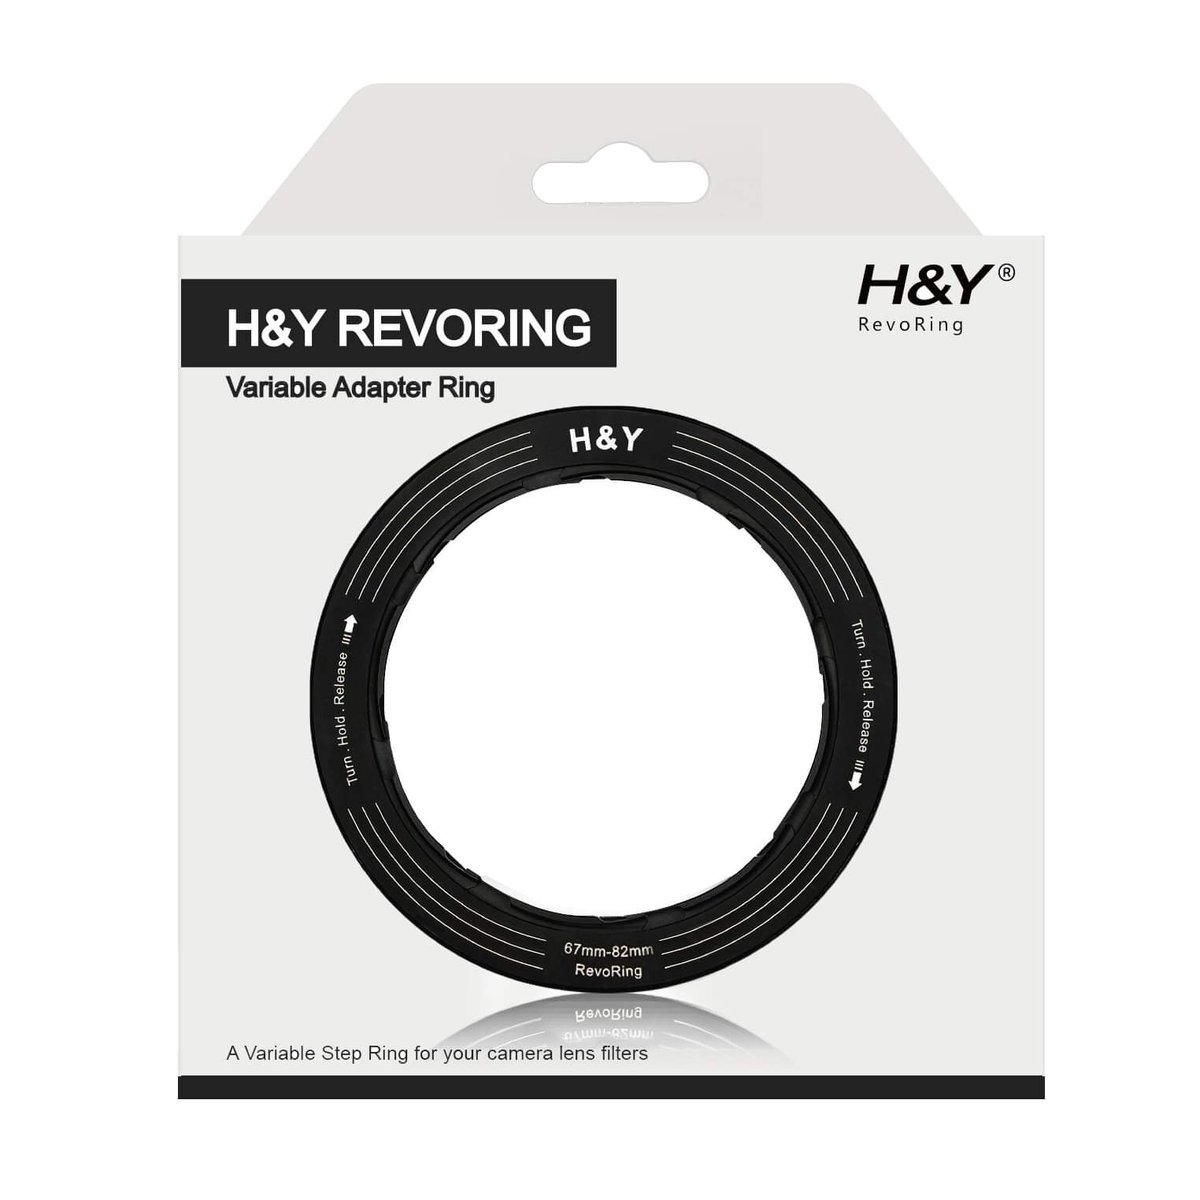 H&Y REVORING 52mm-72mm